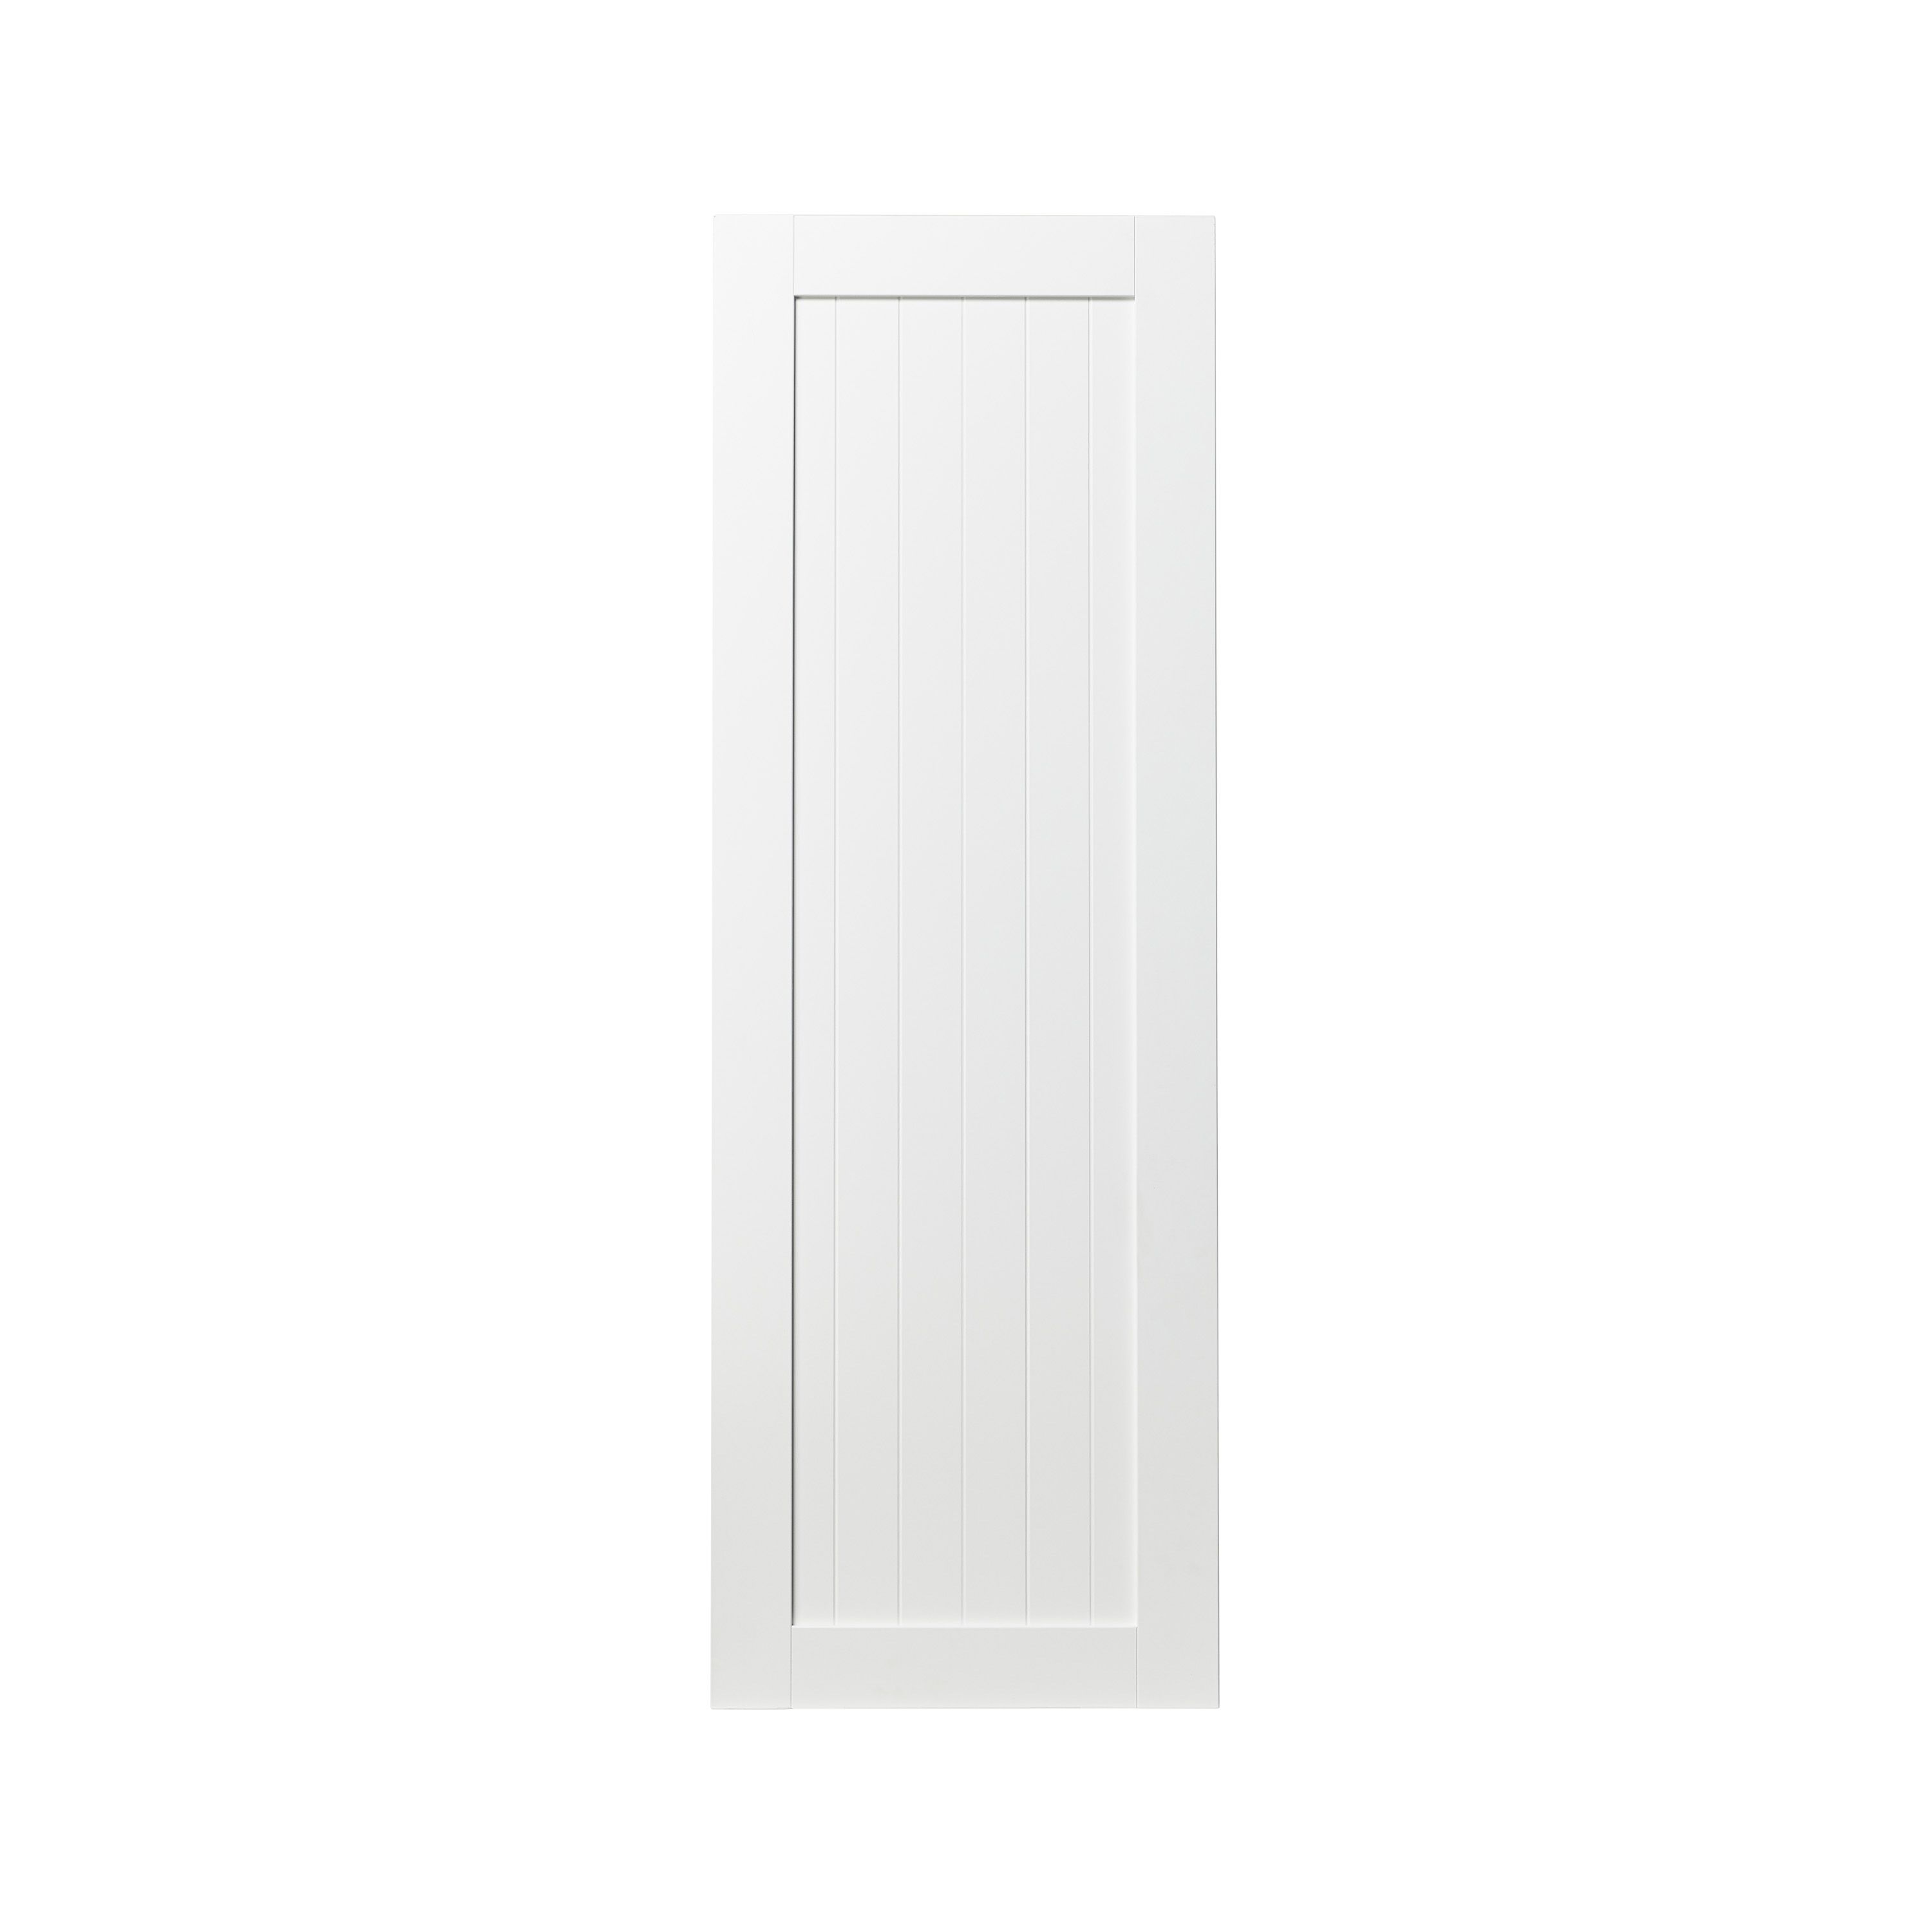 GoodHome Alpinia Matt white tongue & groove shaker Tall larder Cabinet door (W)500mm (H)1467mm (T)18mm